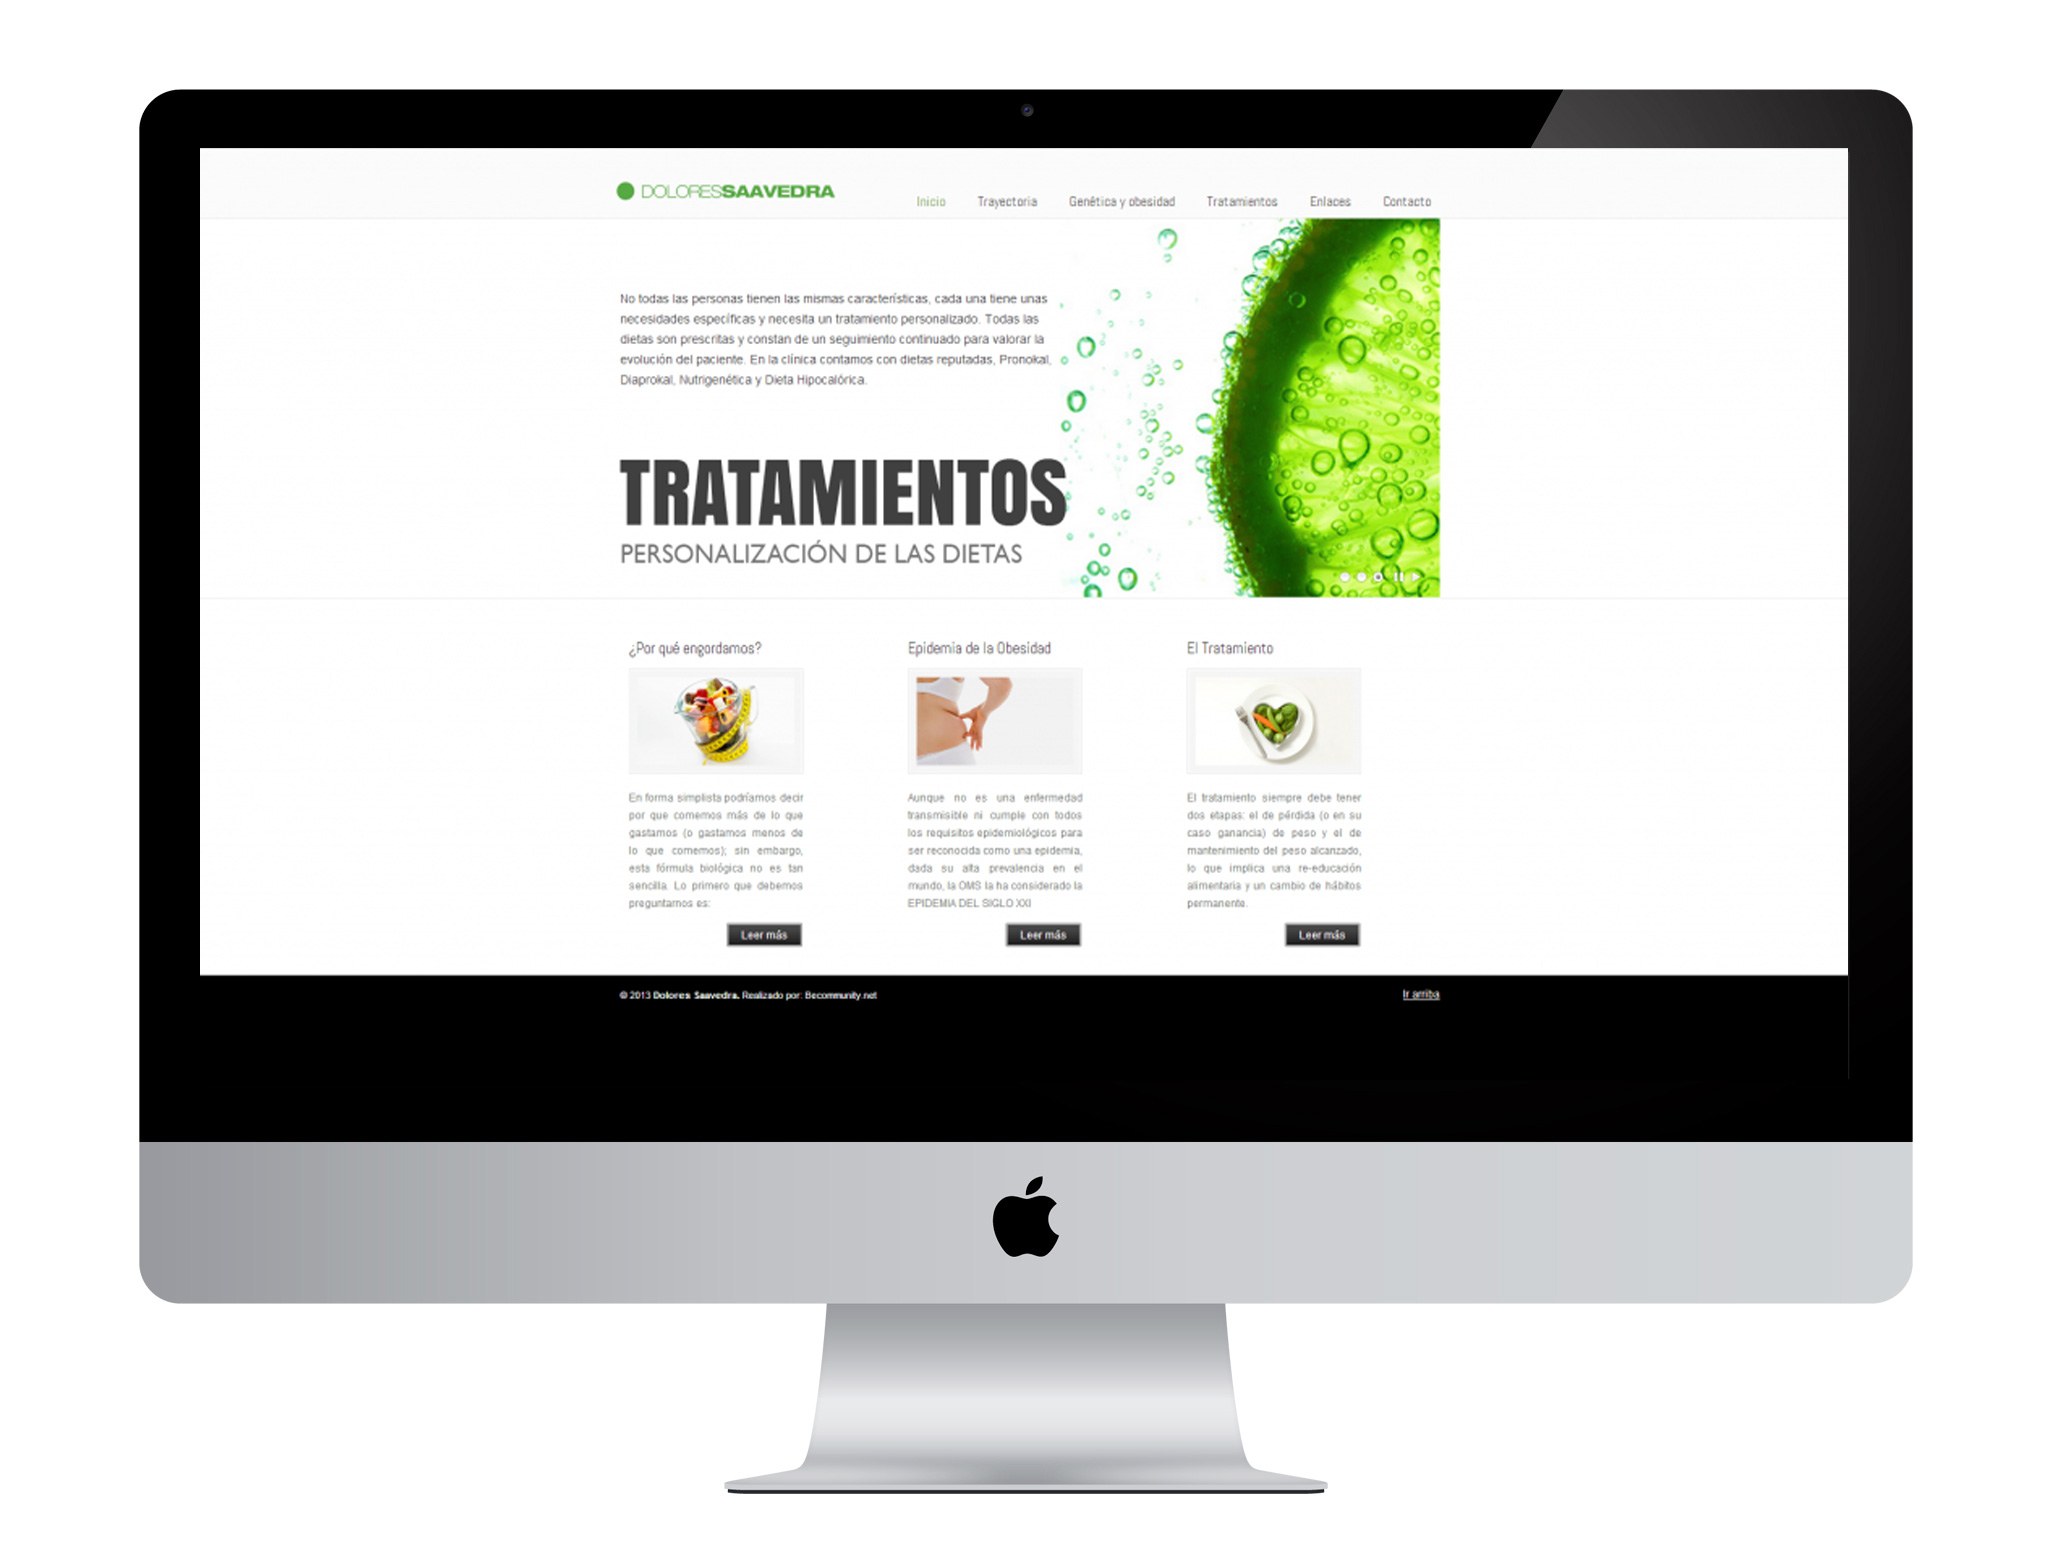 Diseño gráfico y web realizado por agencia de marketing online Softdream